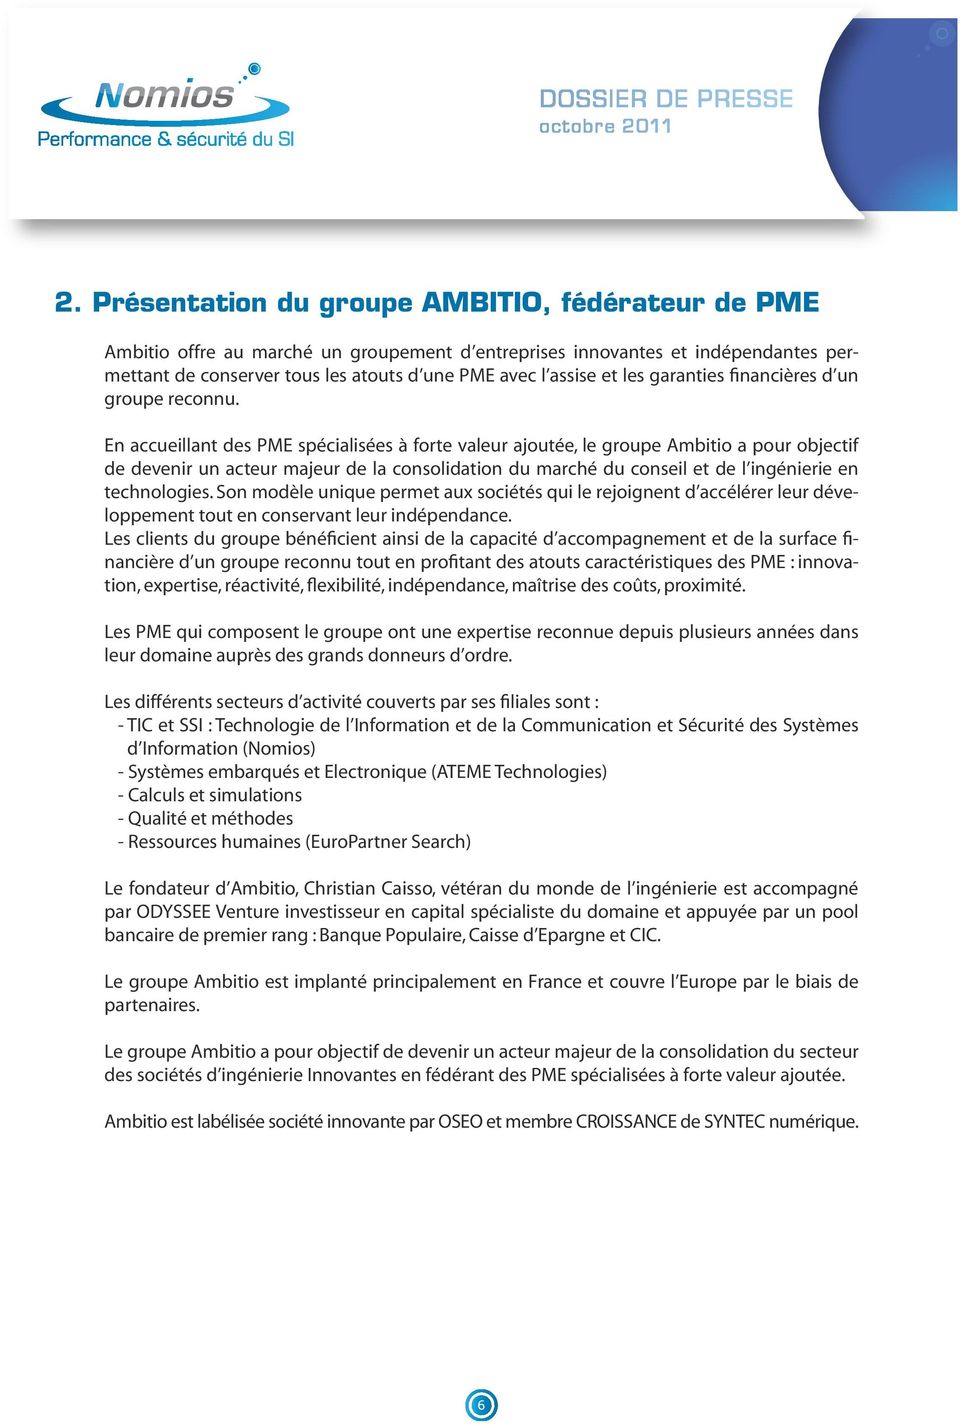 En accueillant des PME spécialisées à forte valeur ajoutée, le groupe Ambitio a pour objectif de devenir un acteur majeur de la consolidation du marché du conseil et de l ingénierie en technologies.